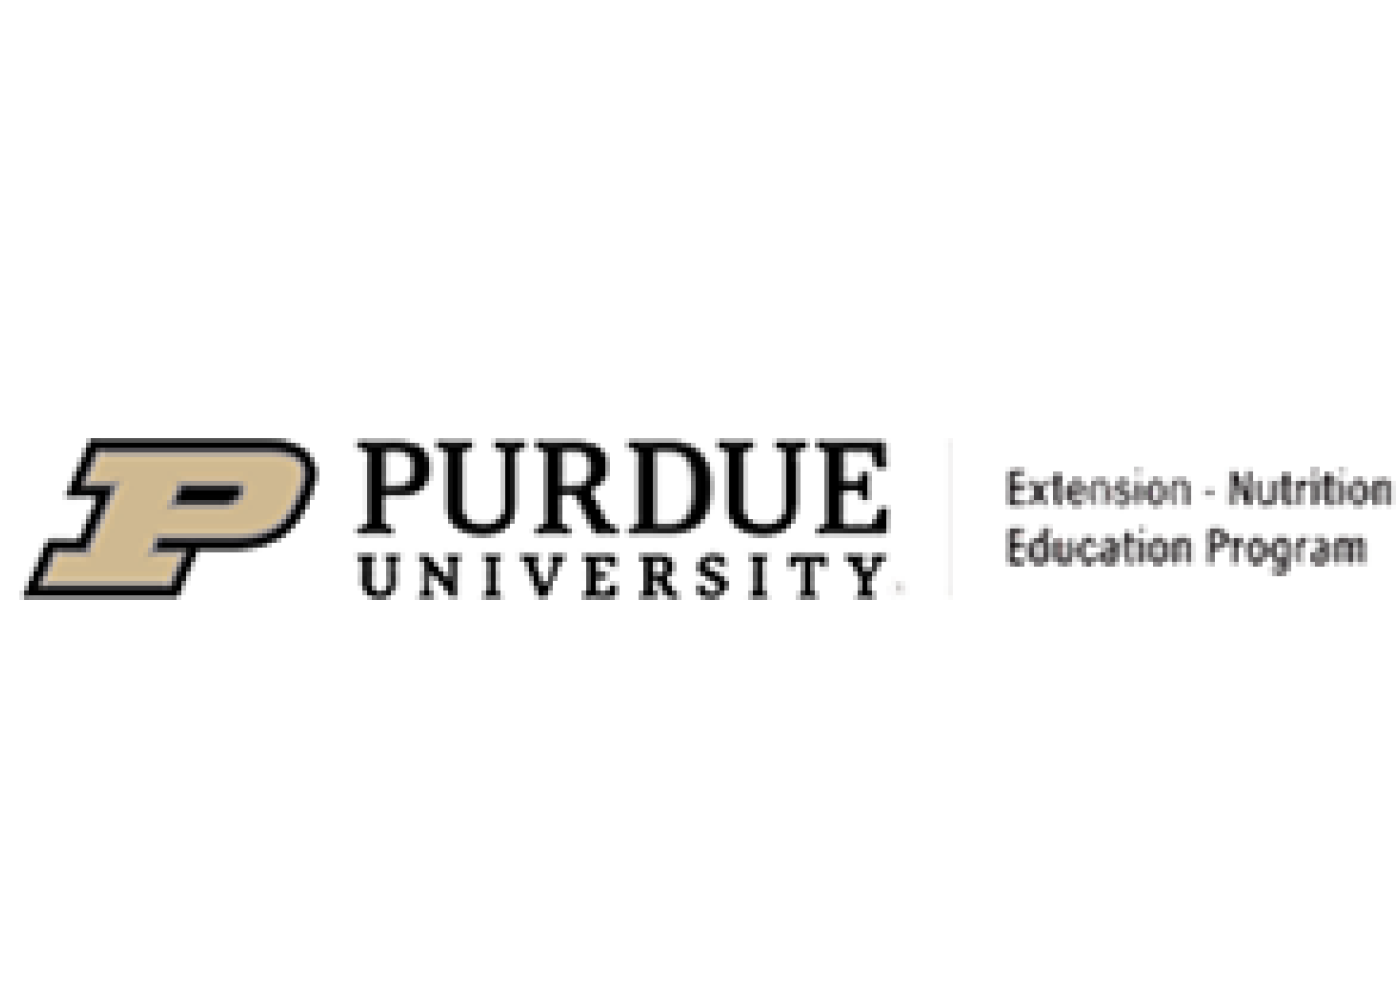 P Purdue University Extension Nutrition Education Program